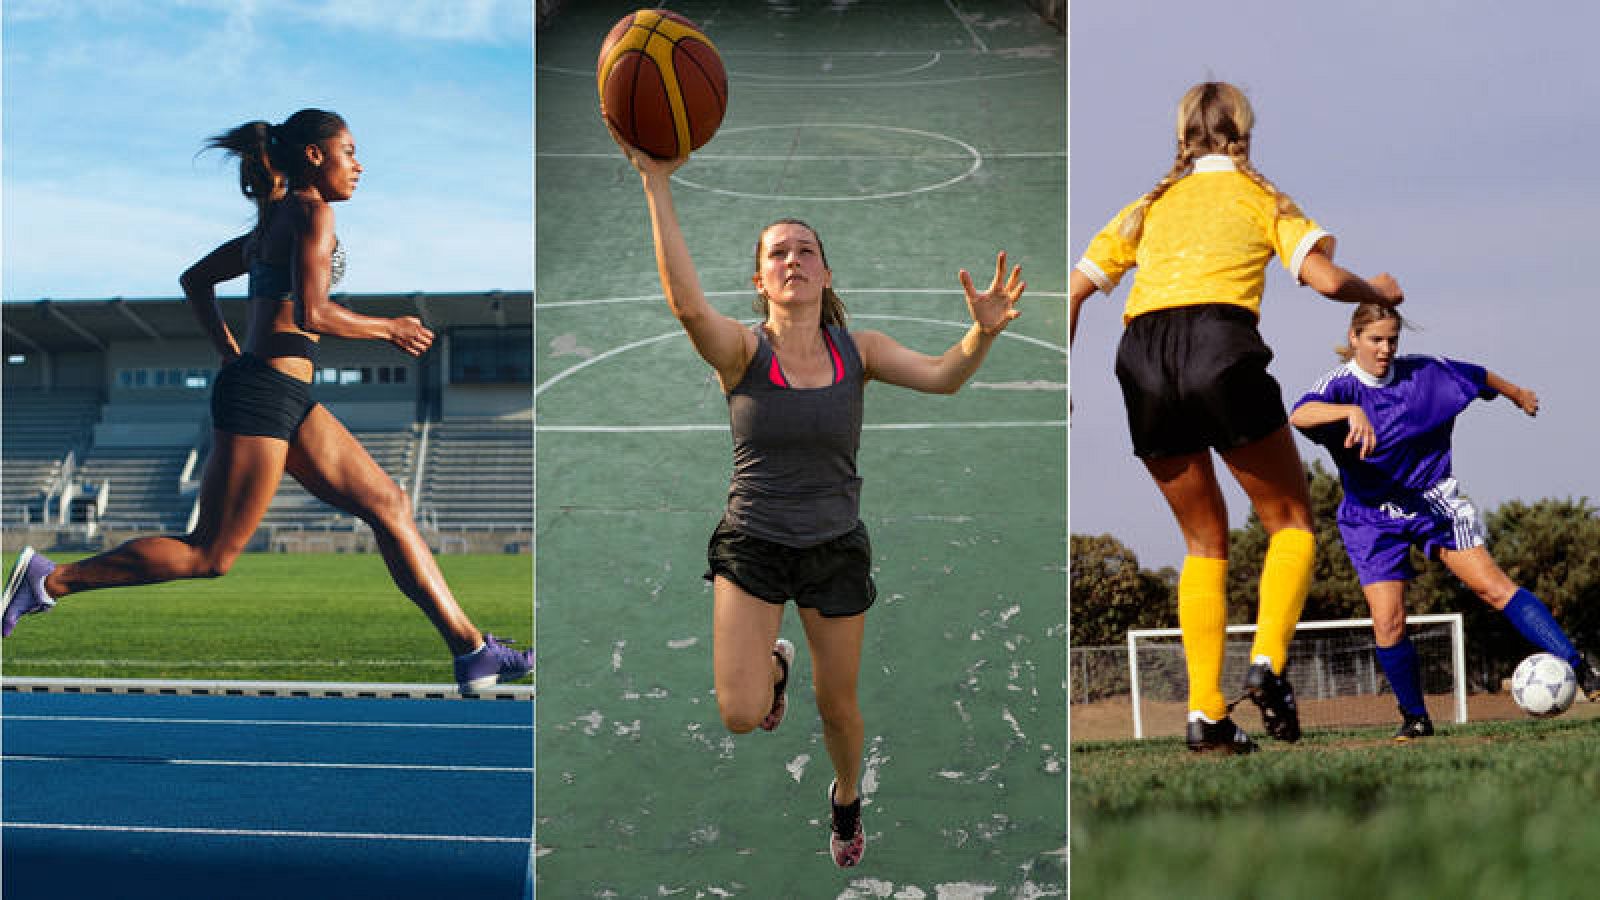 Imágenes de archivo de varias deportistas practicando atletismo, baloncesto y fútbol